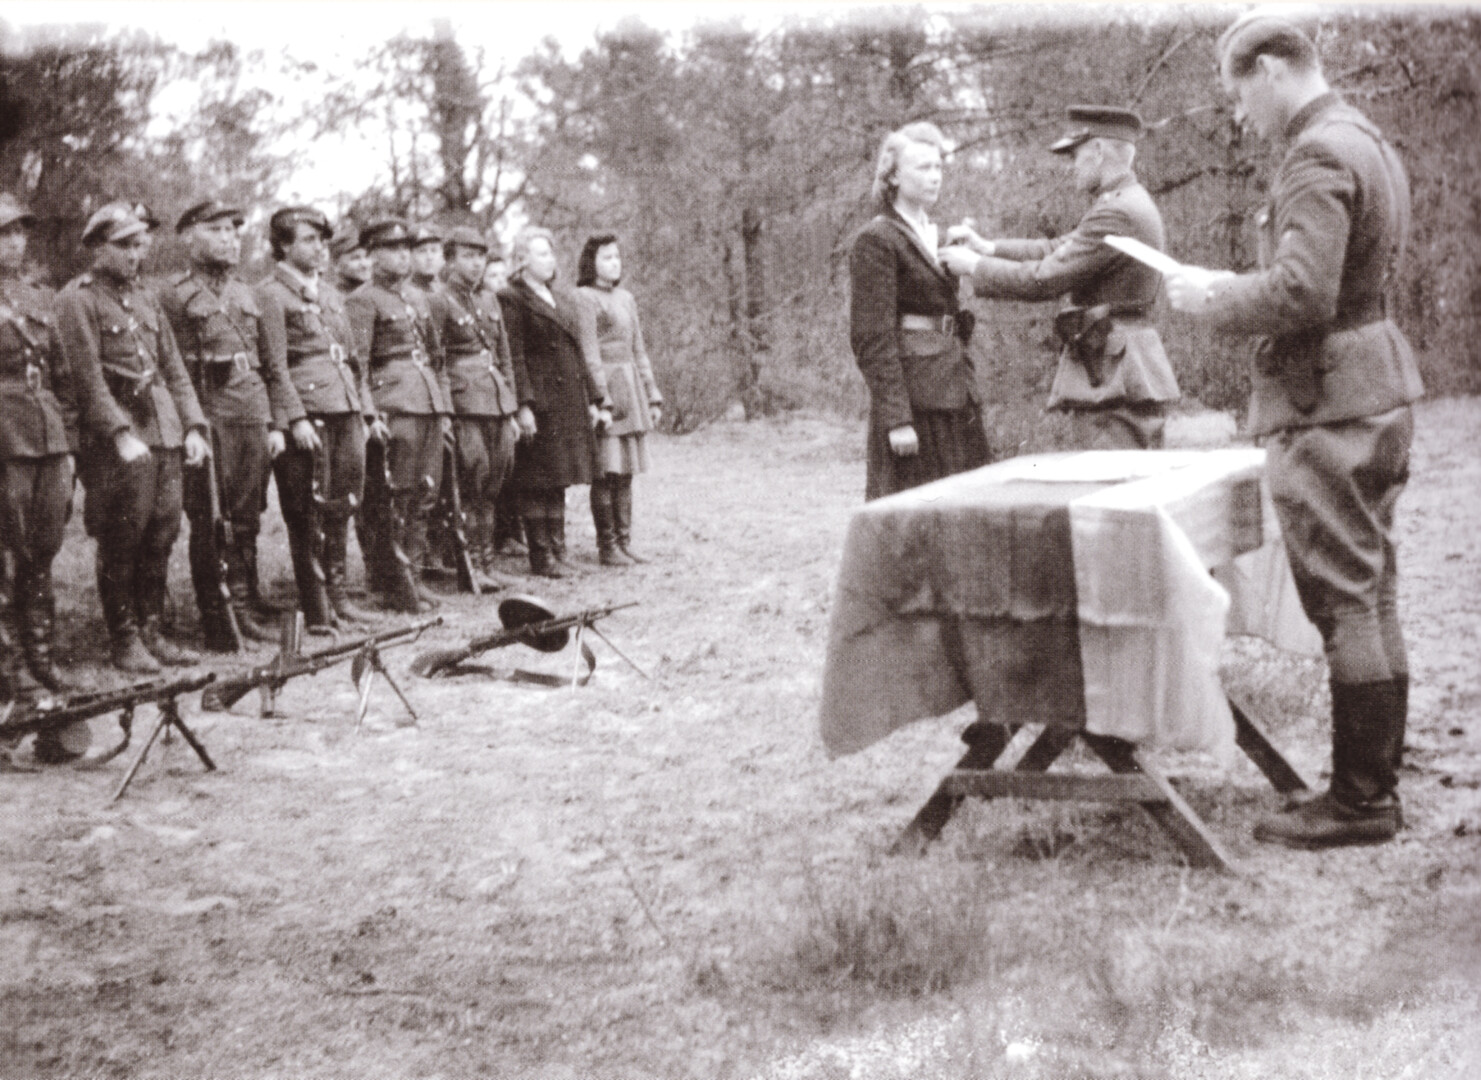 Dar tebevykstant ginkluotam pasipriešinimui sovietams, Lietuvos kovotojai sulaukė pirmųjų apdovanojimų šiame oficialiai neskelbtame kare su okupantais.